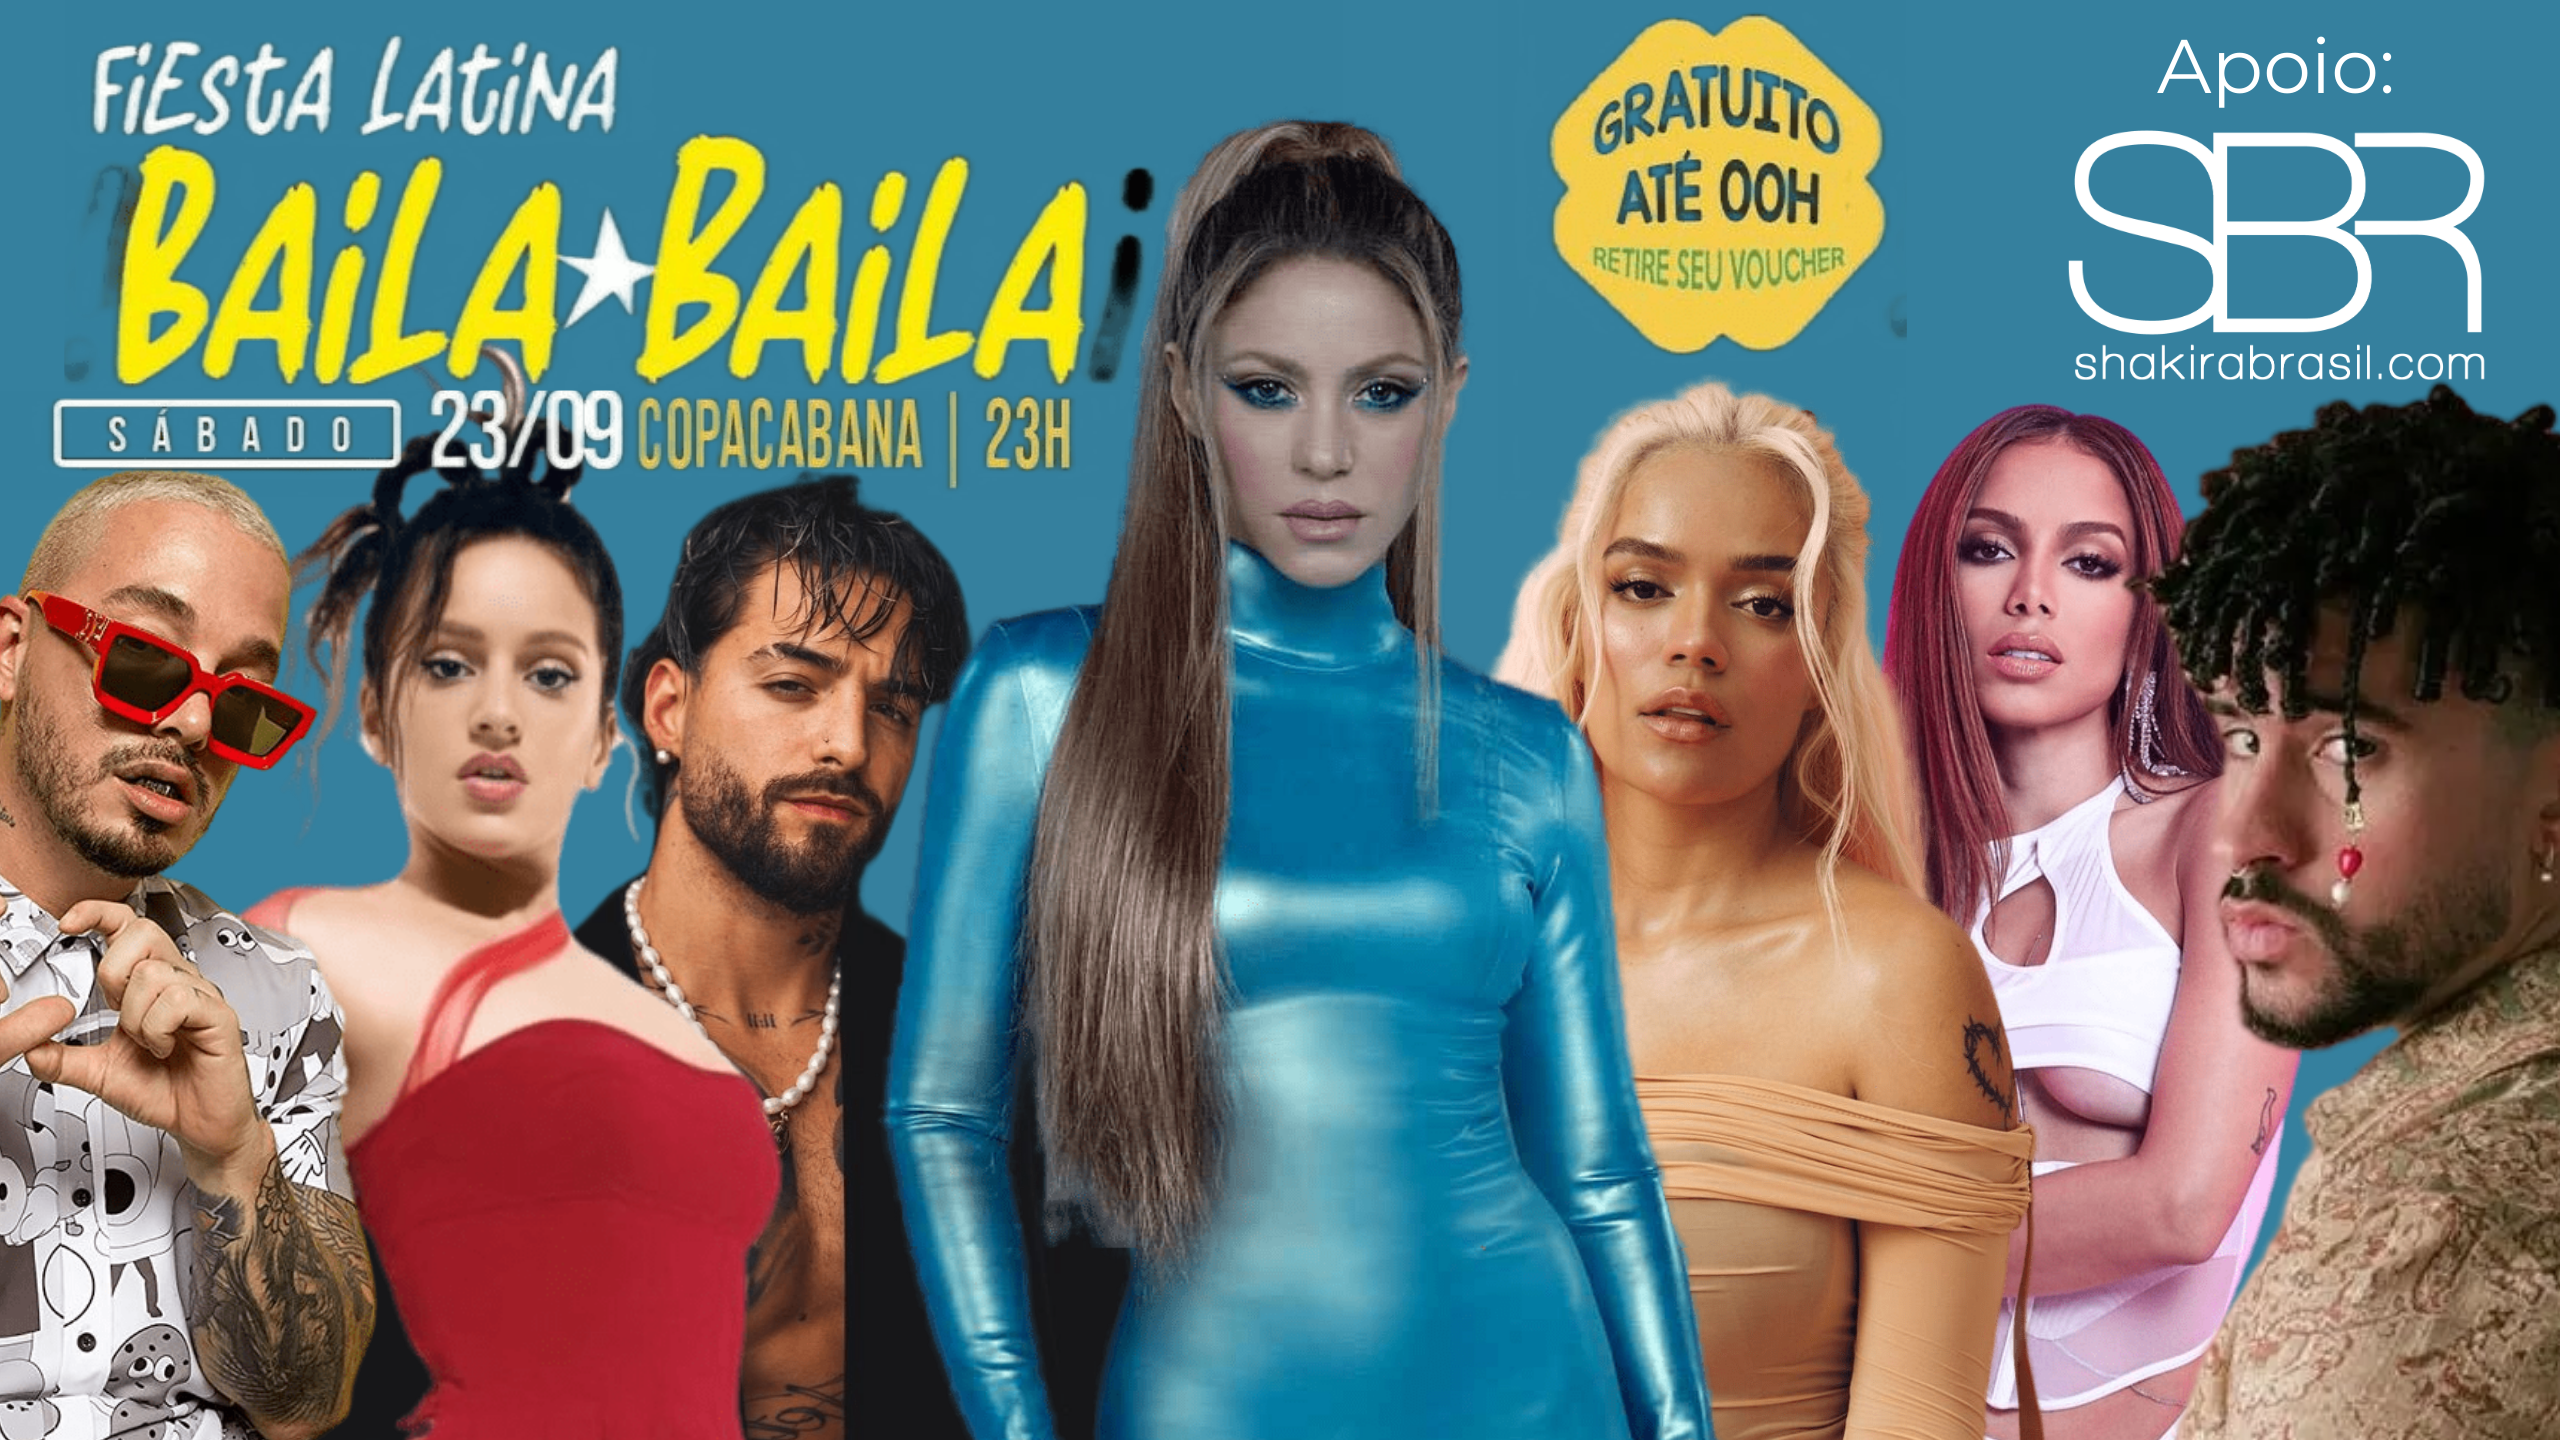 Festa latina “Baila Baila” promete agitar o Rio de Janeiro ao som de muita Shakira